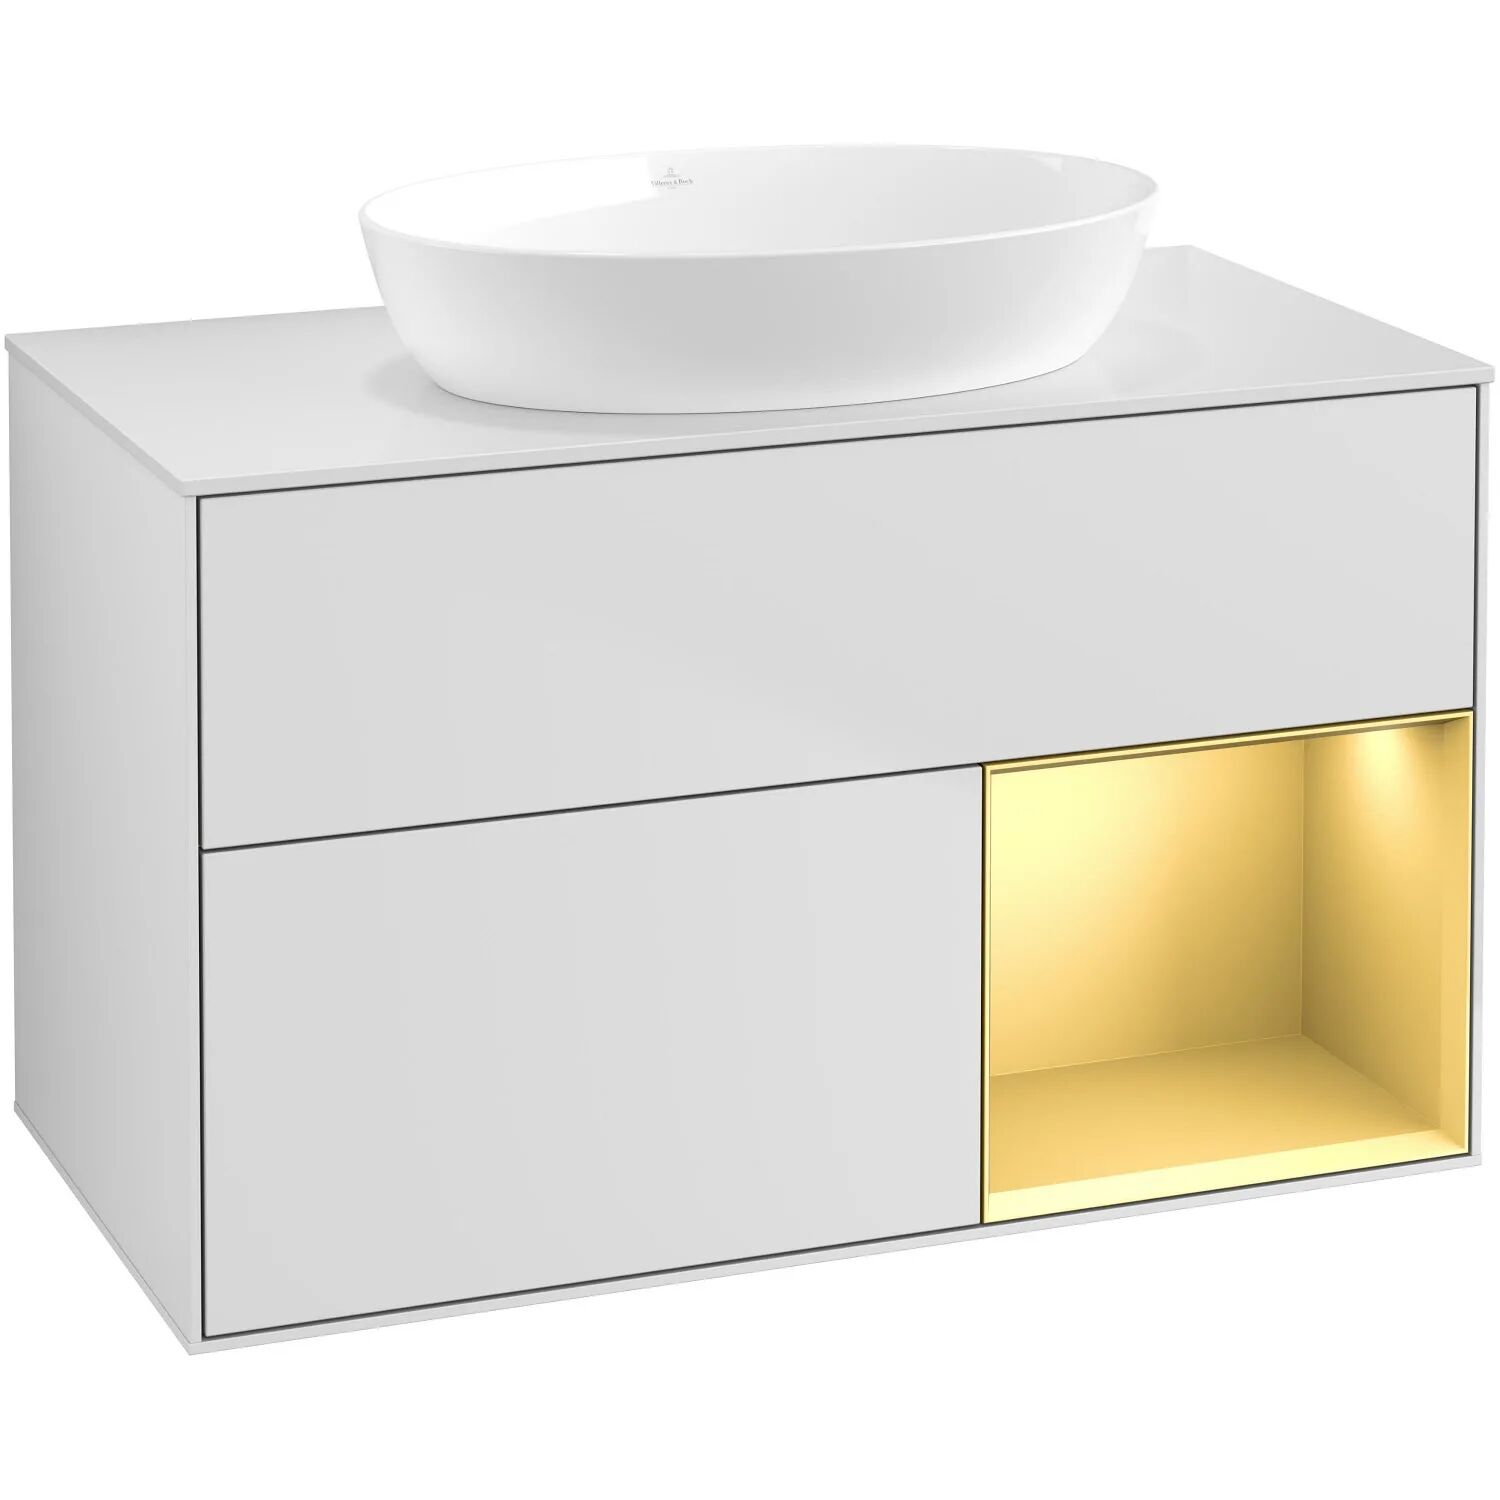 Villeroy & Boch Finion Waschtischunterschrank 100 cm mit Regalelement rechts, Abdeckplatte, Wandbeleuchtung   gold matt lacquer/white matt lacquer